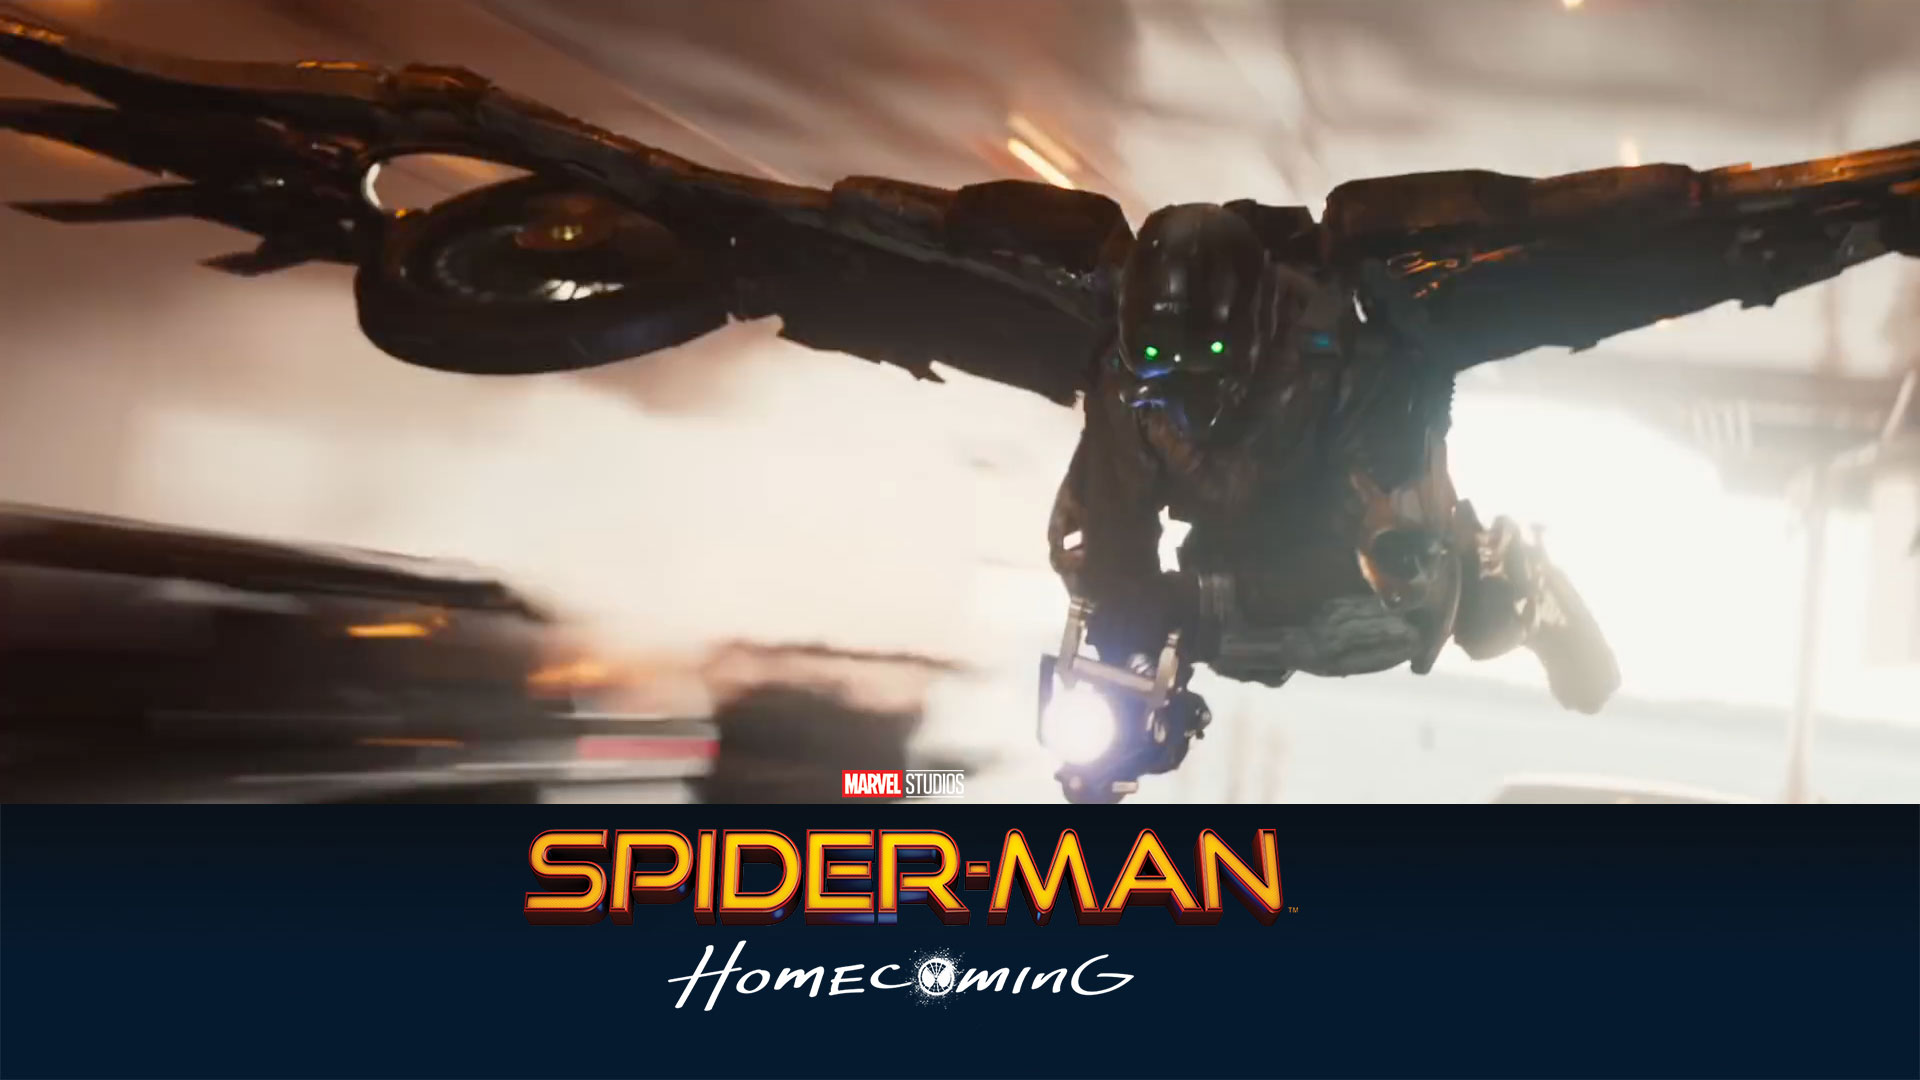 fondo de pantalla de spiderman homecoming,juego de acción y aventura,personaje de ficción,fuente,composición digital,hombre murciélago